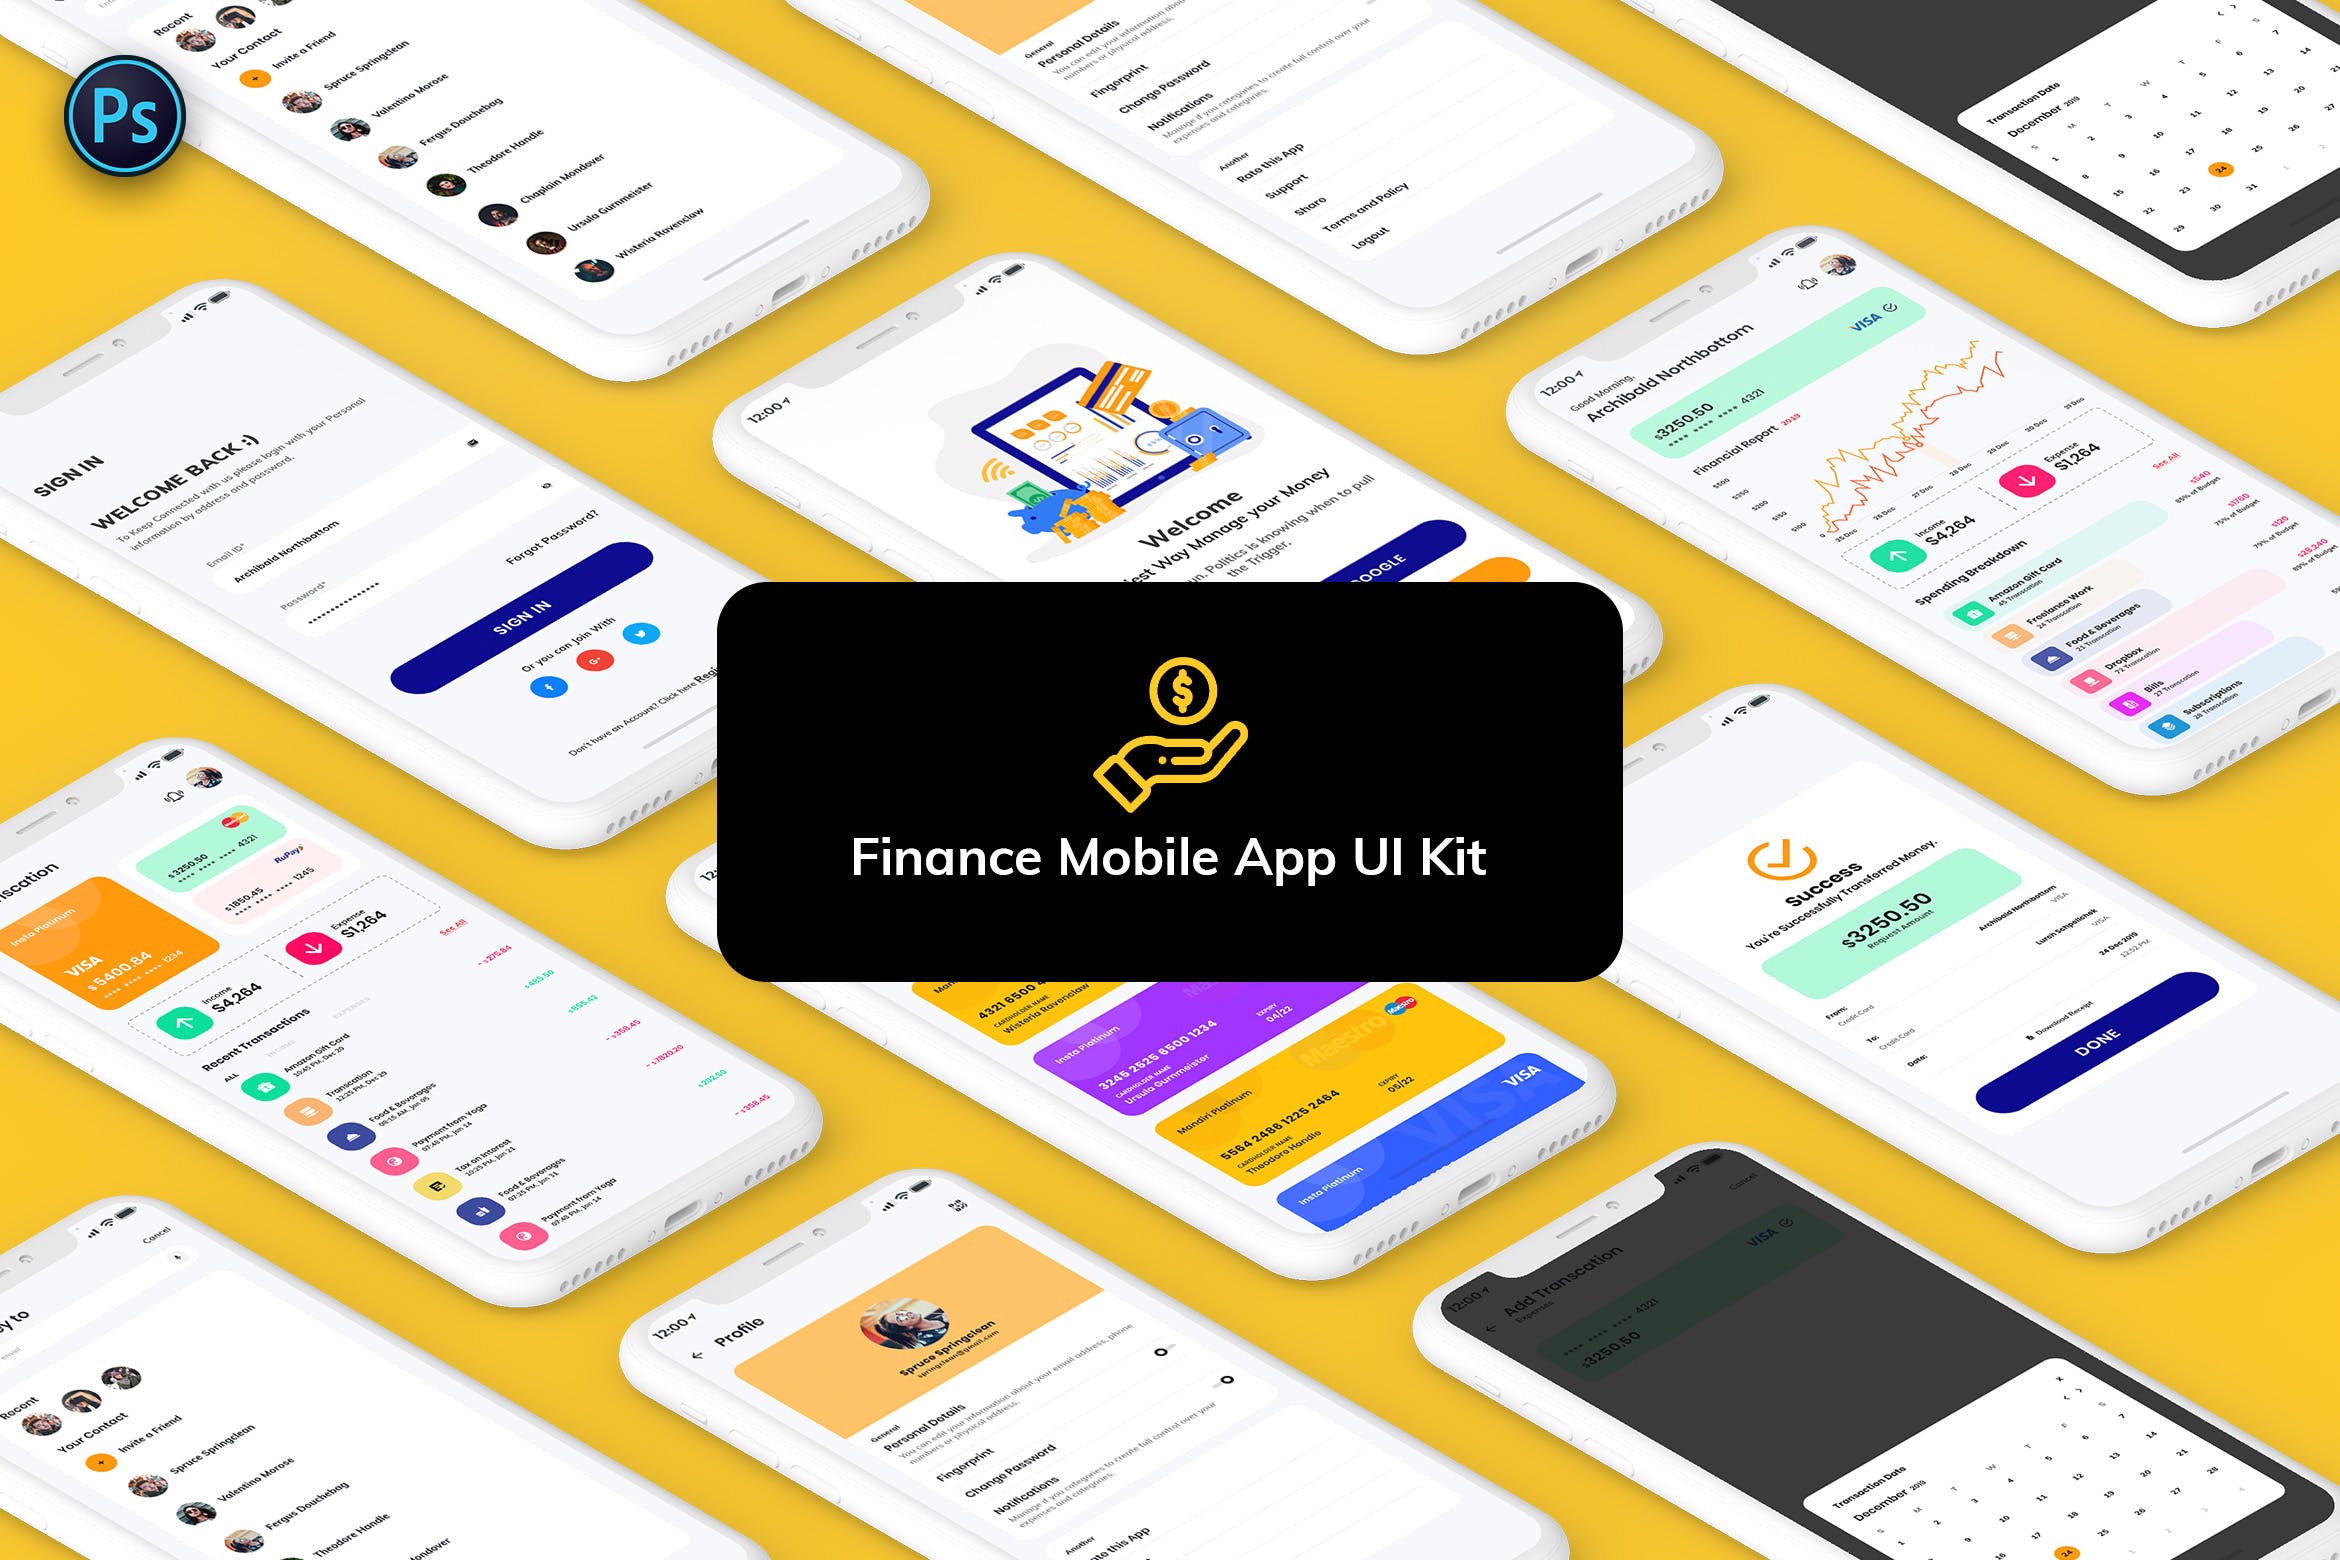 金融网上交易APP应用UI界面设计蚂蚁素材精选模板 Finance Mobile App Template UI Kit Light Version插图